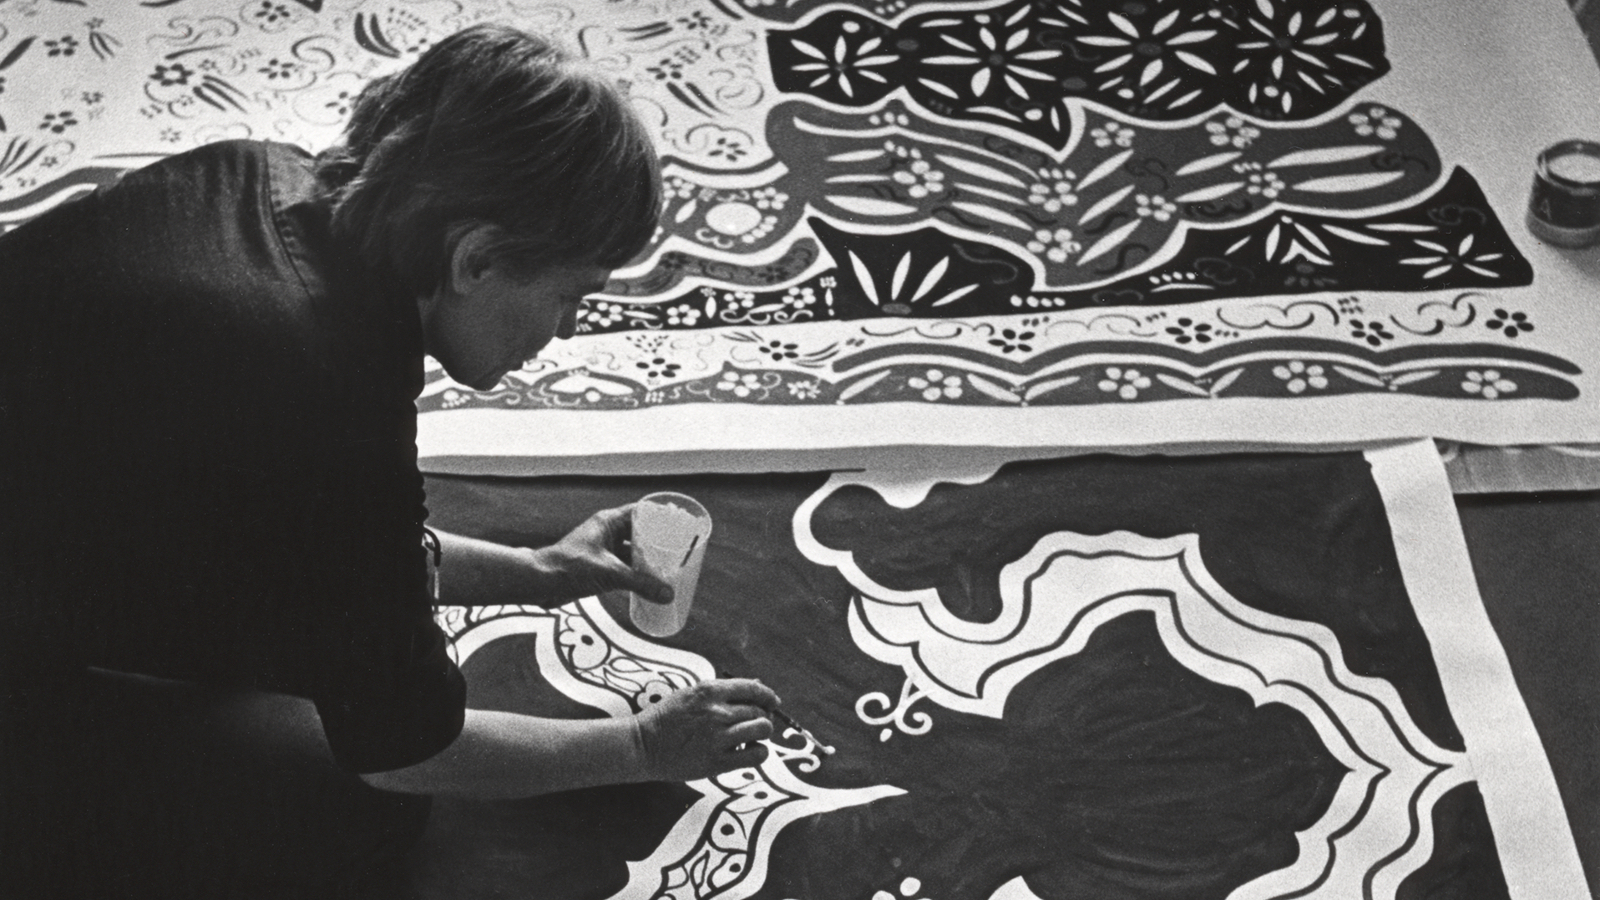 Kuvassa on Maija Isola lattialla kumartuneena maalaamaan kankaan kuvioita.  Kuva on musta-valkoinen.